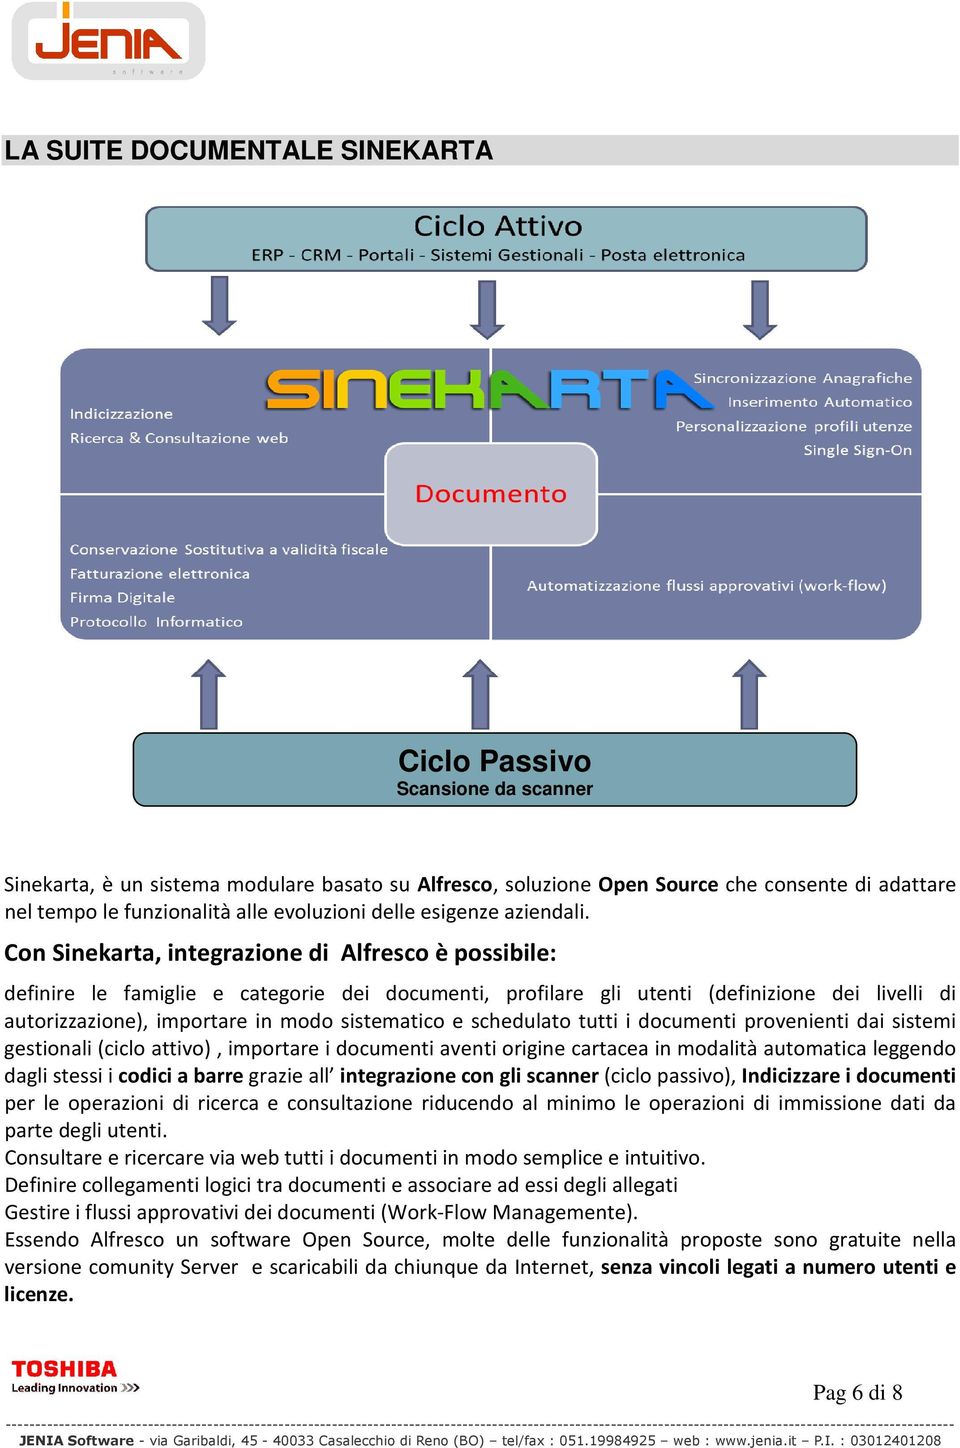 Con Sinekarta, integrazione di Alfresco è possibile: definire le famiglie e categorie dei documenti, profilare gli utenti (definizione dei livelli di autorizzazione), importare in modo sistematico e